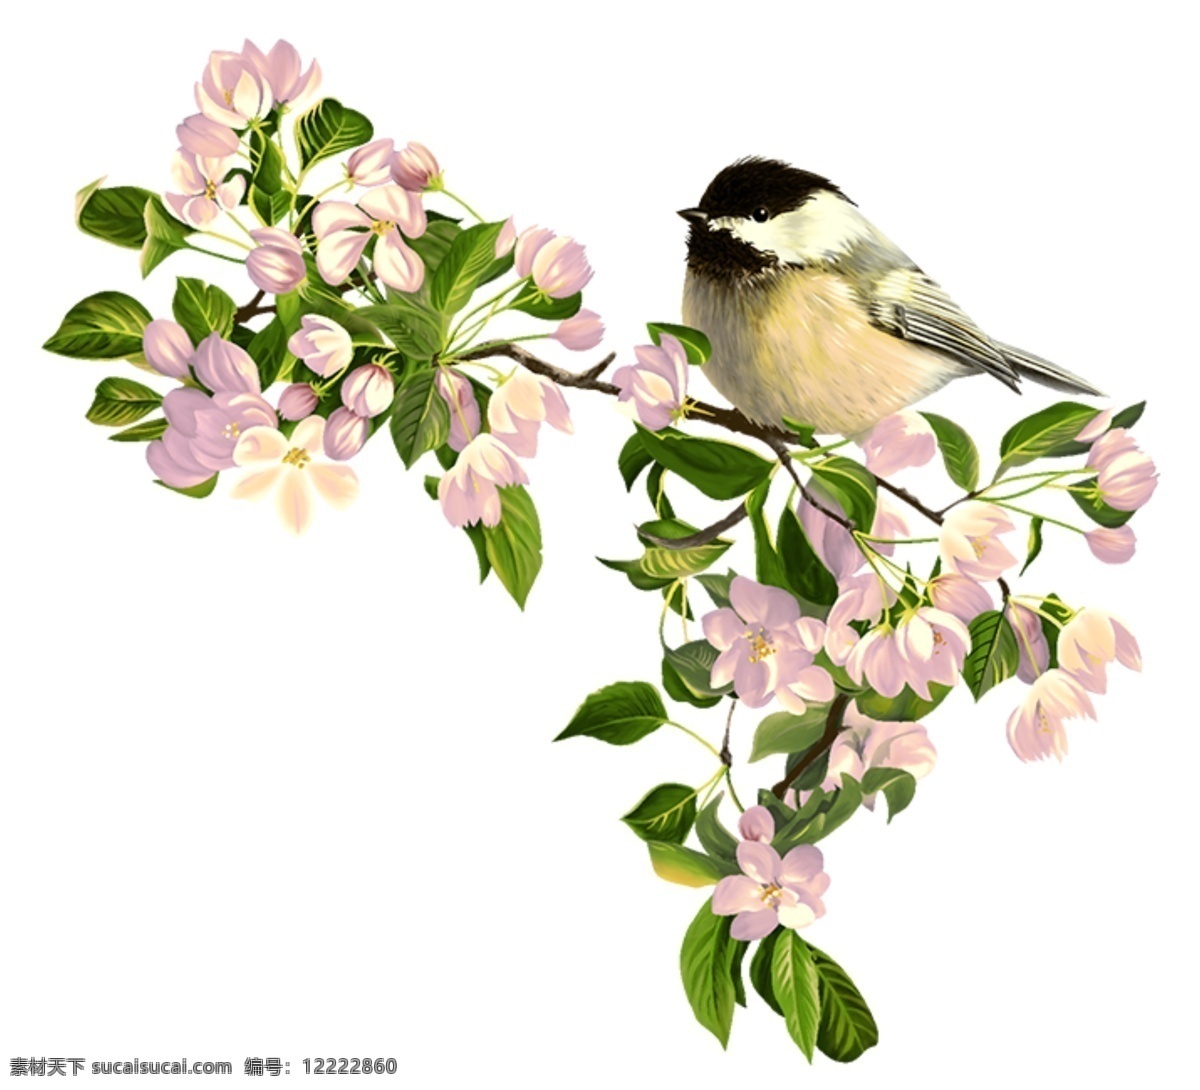 漂亮 手绘 小鸟 插画 手绘素材 春天 底纹 鸟 墙纸 墙纸素材 花鸟图 粉色小花